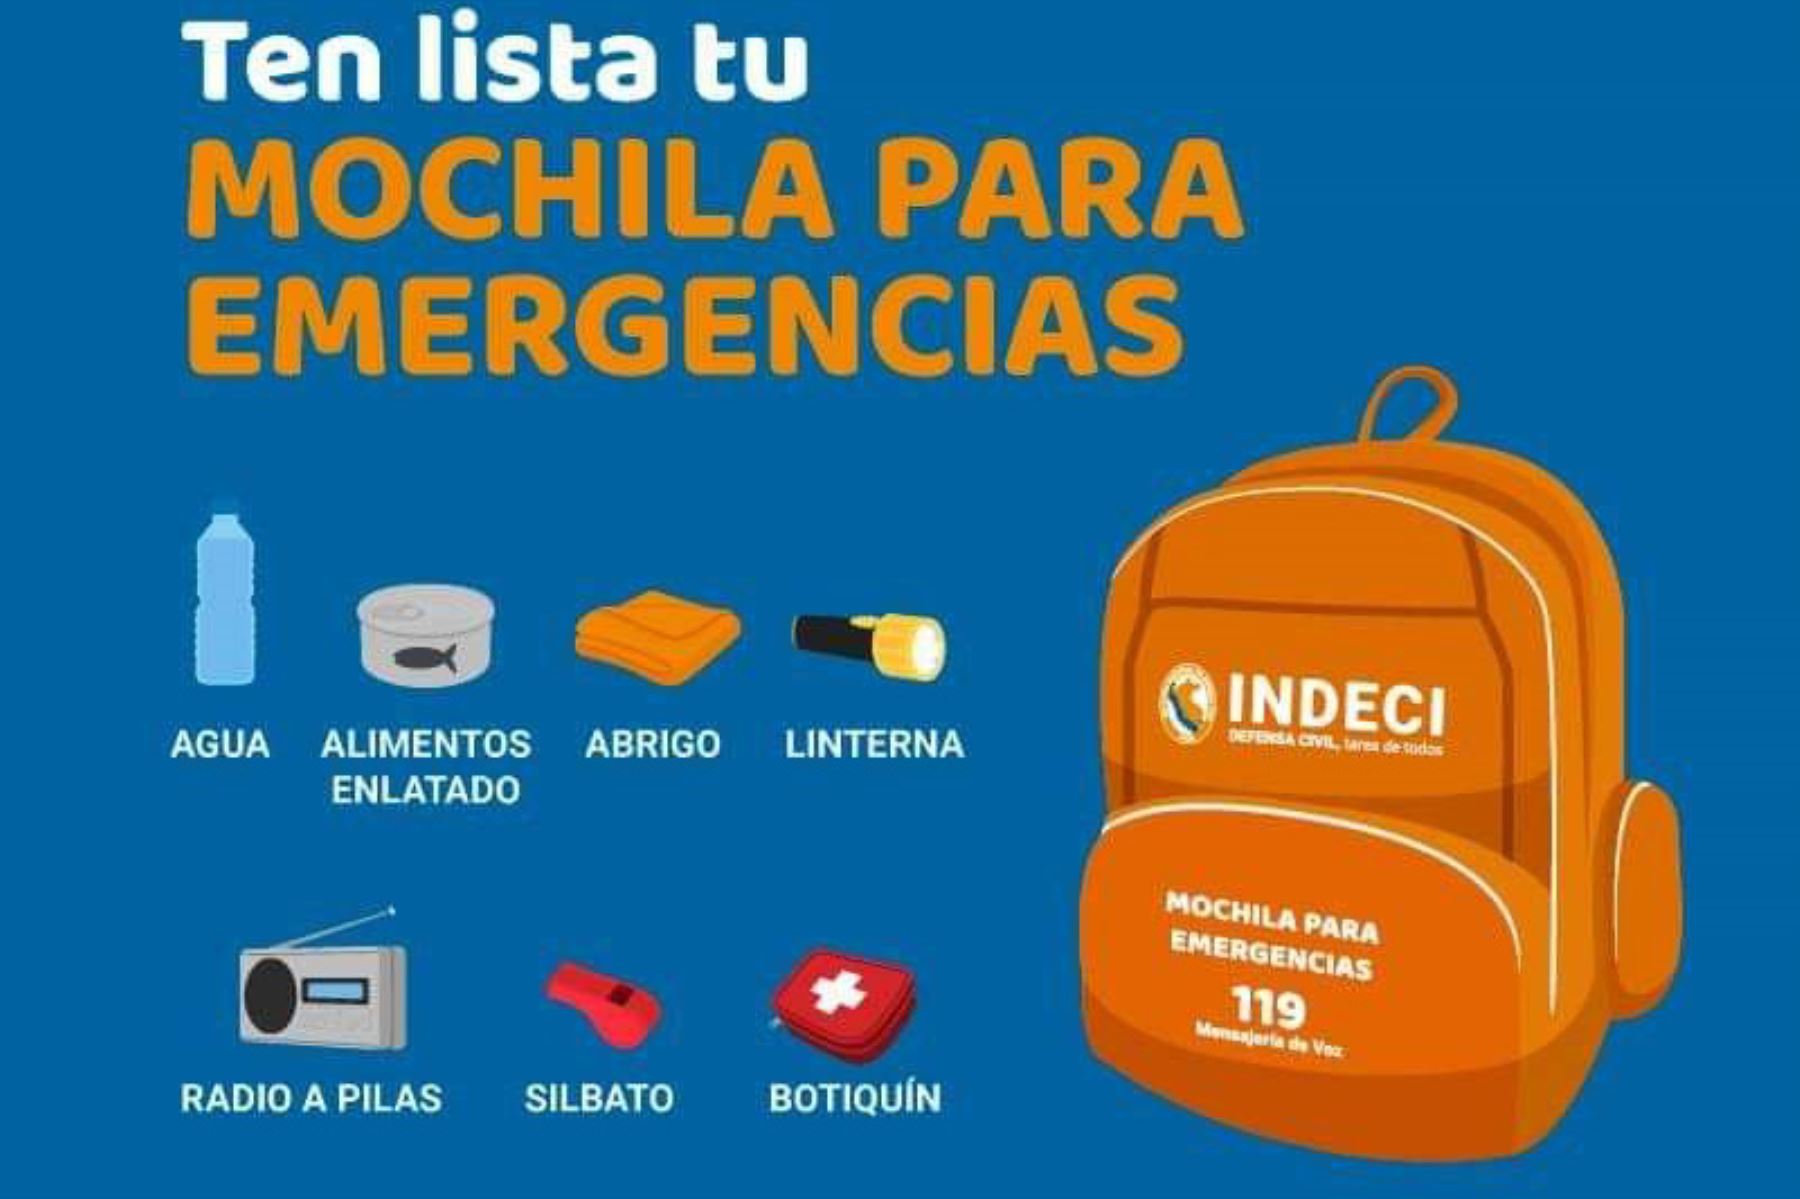 Como medida de prevención, se debe tener lista una mochila de emergencias ante un sismo, recordó el Indeci.